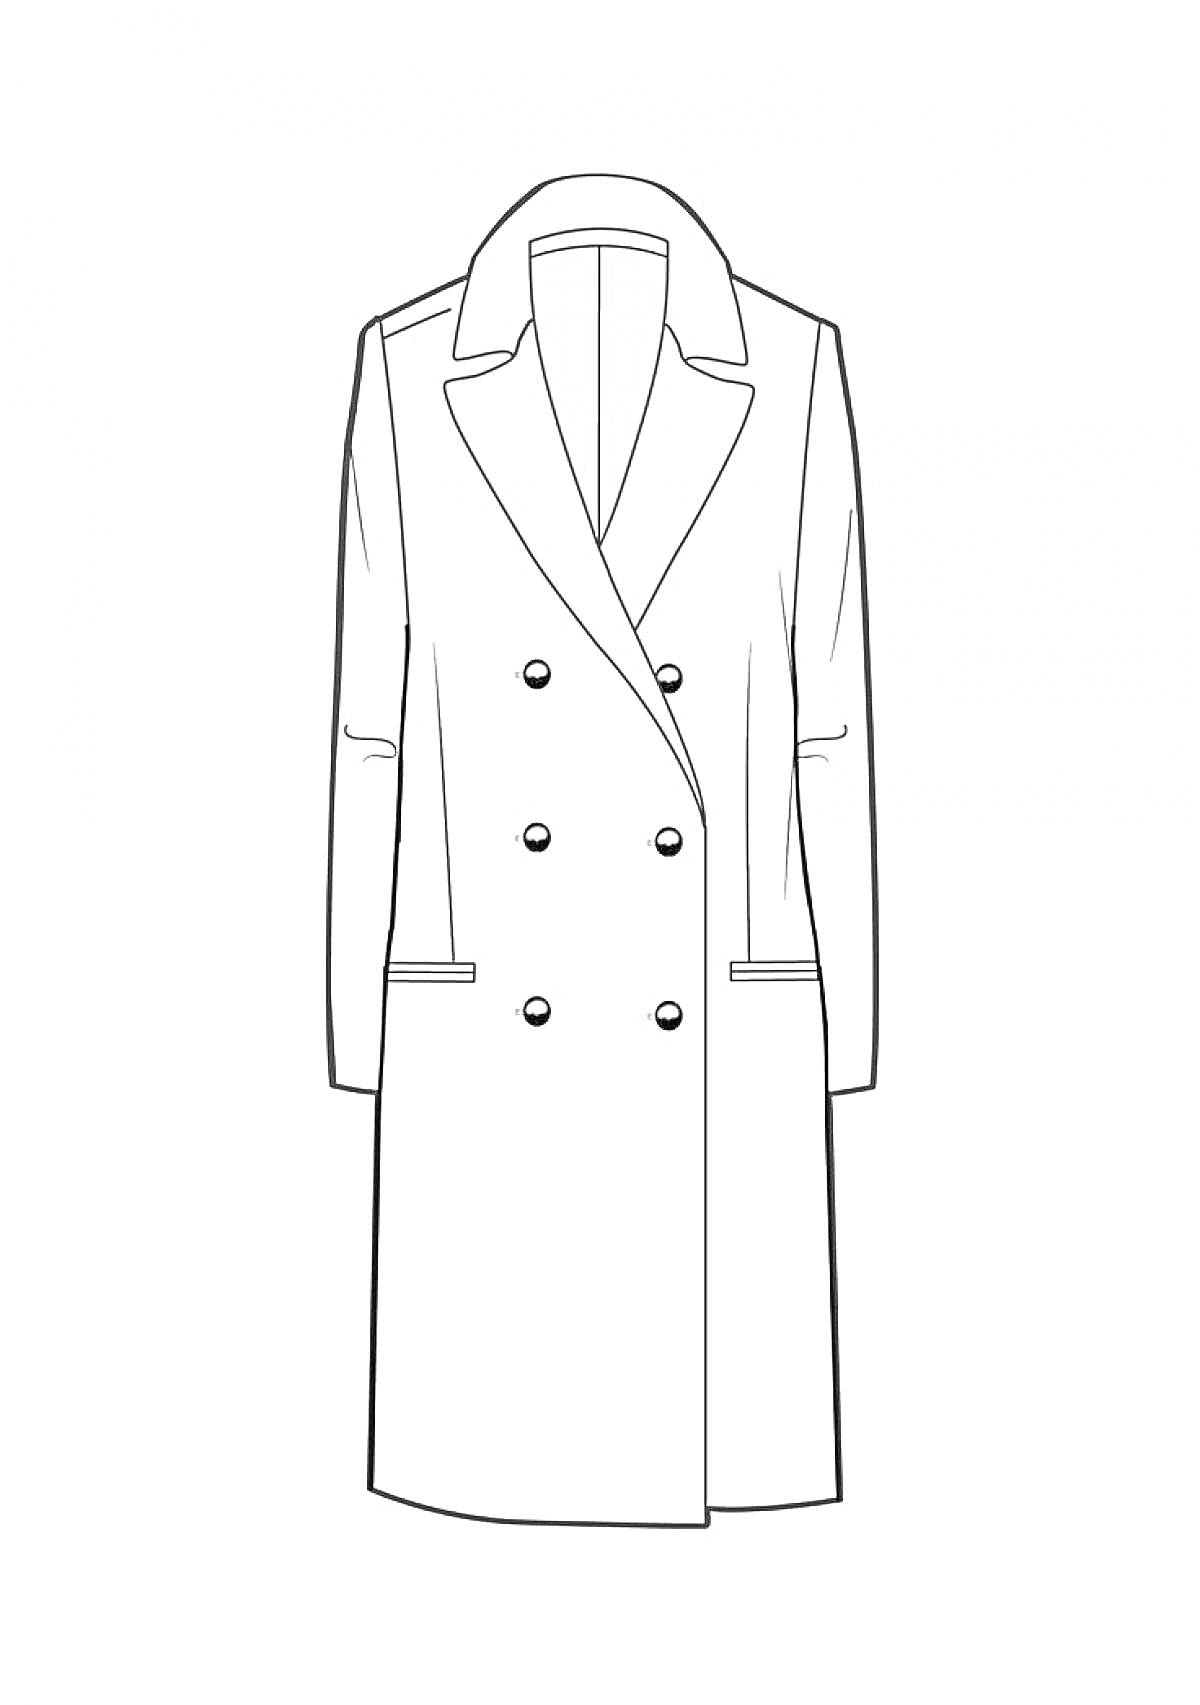 Двубортное пальто средней длины с отложным воротником и двумя рядами пуговиц